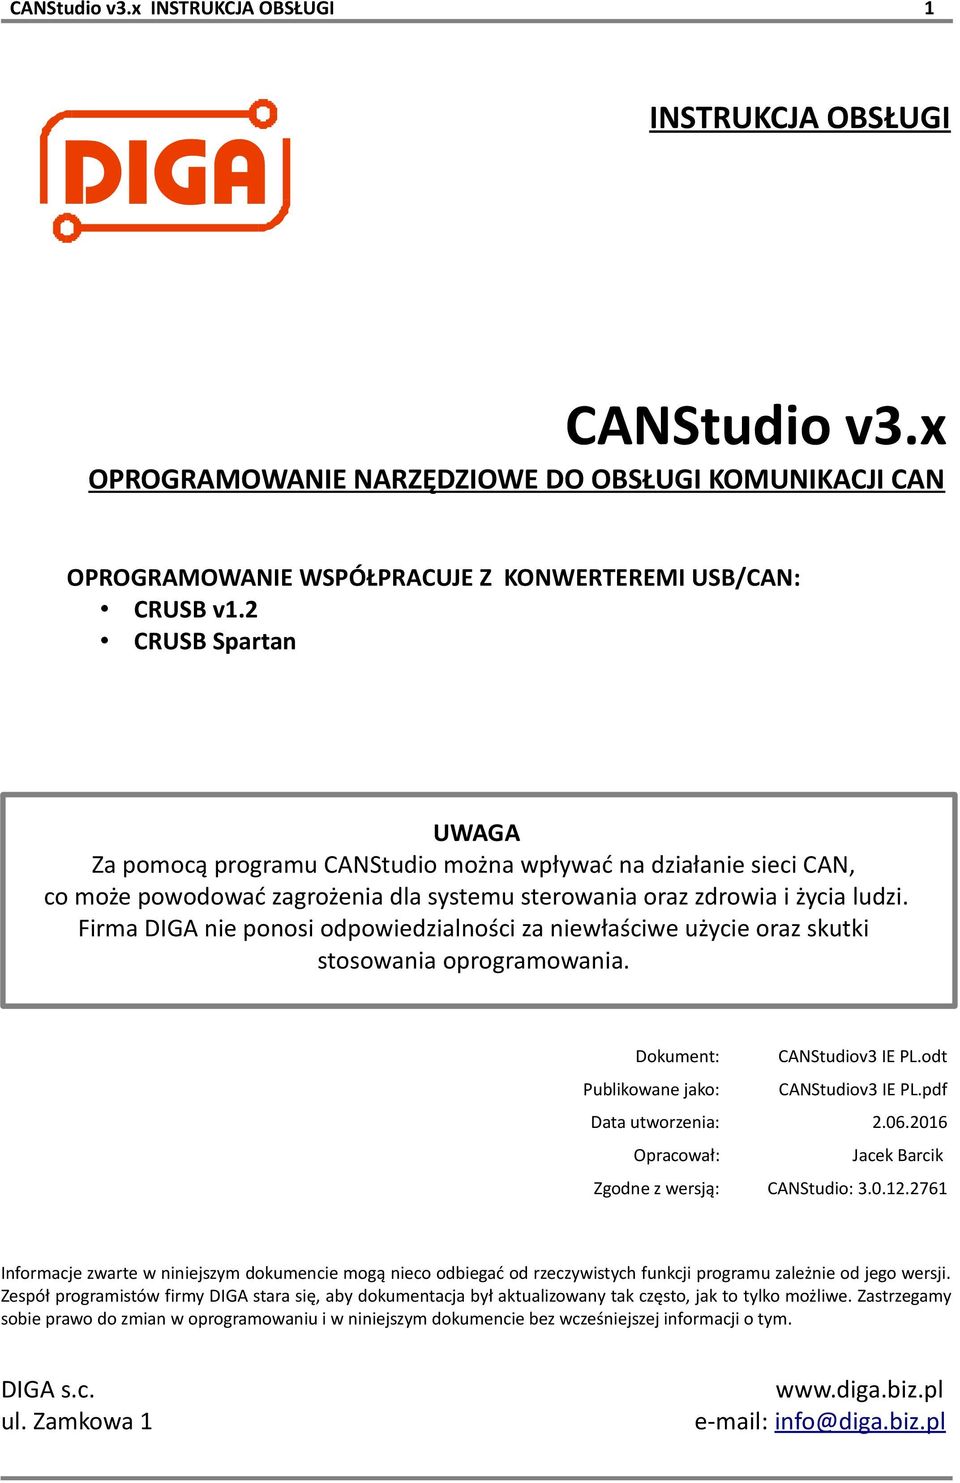 Firma DIGA nie ponosi odpowiedzialności za niewłaściwe użycie oraz skutki stosowania oprogramowania. Dokument: CANStudiov3 IE PL.odt Publikowane jako: CANStudiov3 IE PL.pdf Data utworzenia: 2.06.